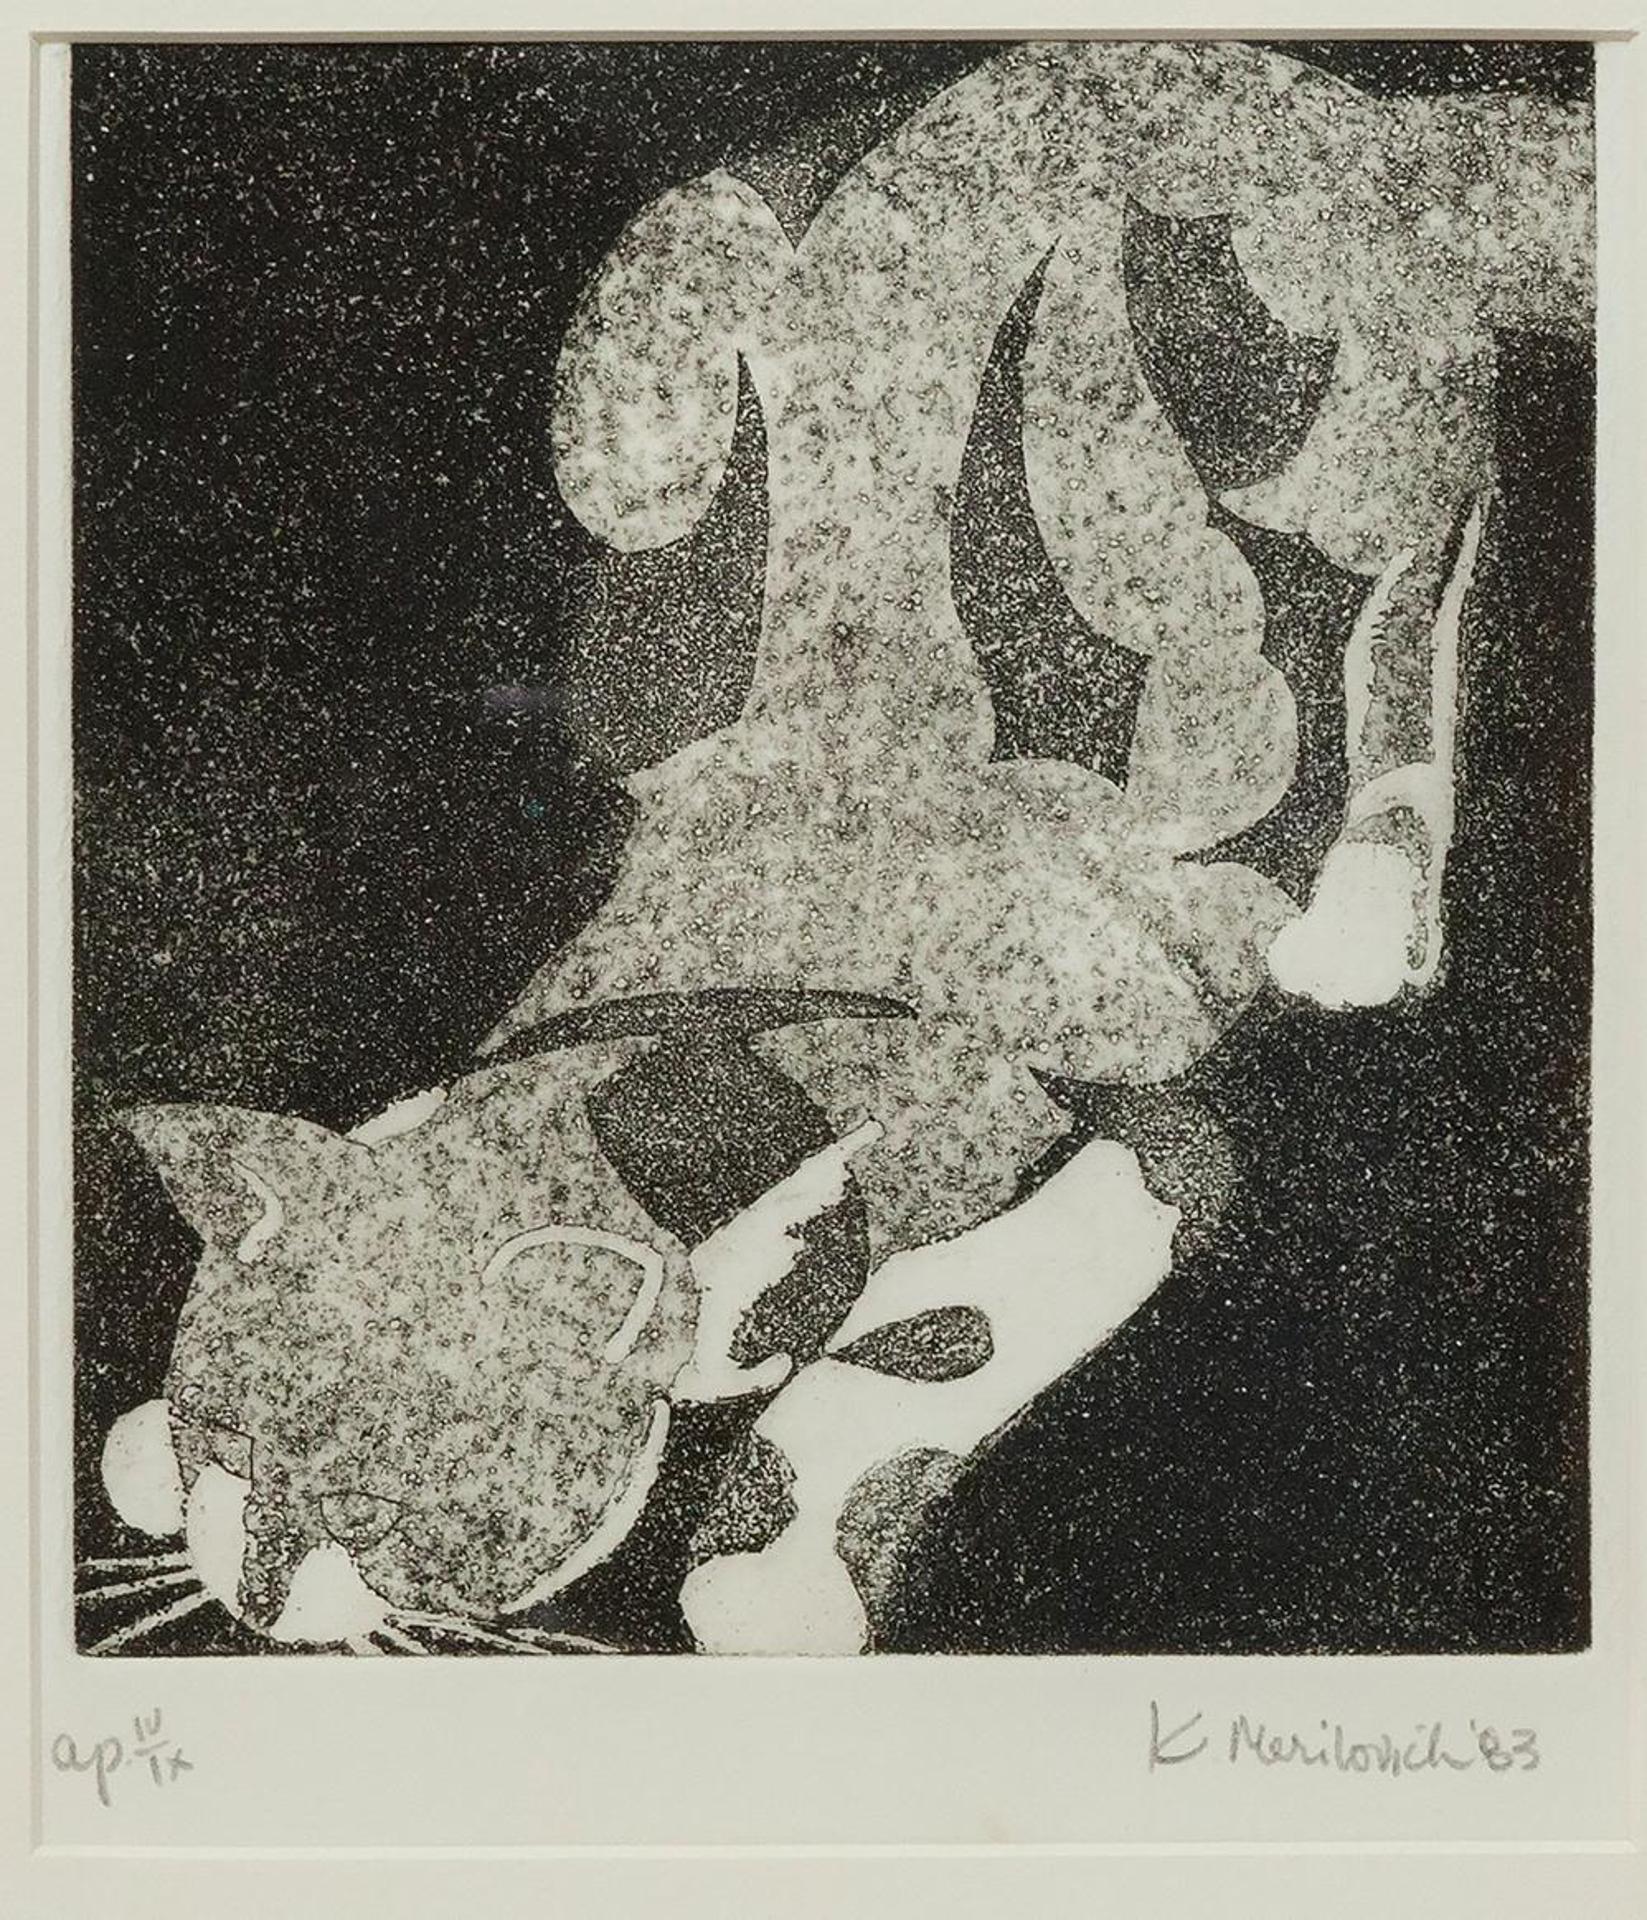 A. Merilovich - Untitled - Crouching Cat